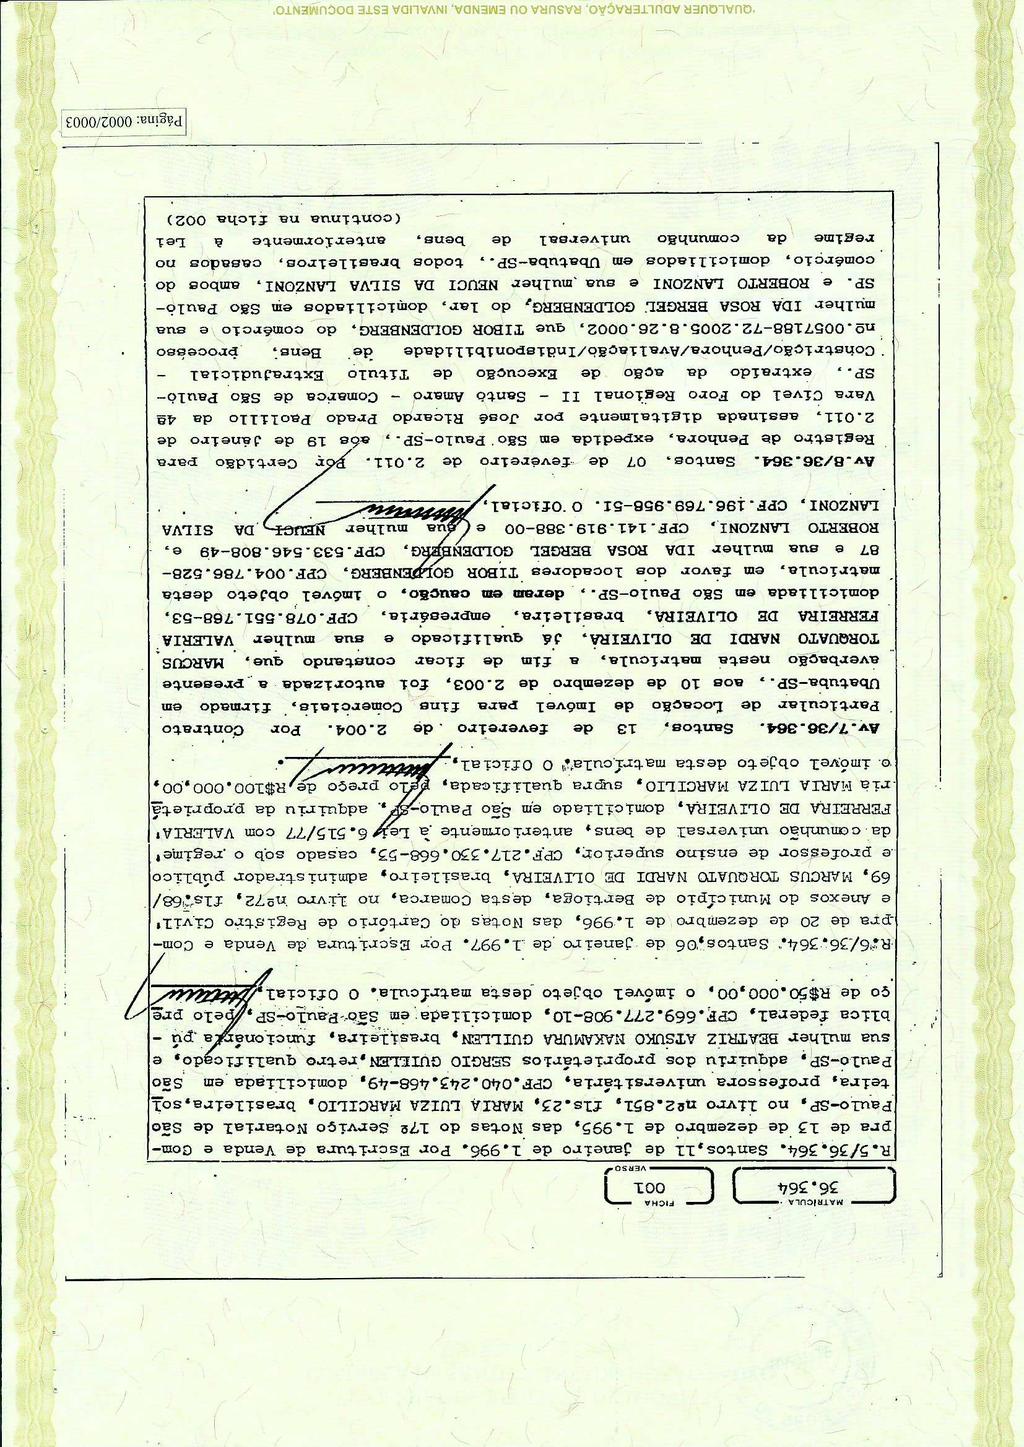 fls. 21 Este documento é cópia do original, assinado digitalmente por CESAR AUGUSTO LEITE E PRATES e Tribunal de Justica do Estado de Sao Paulo, protocolado em 14/08/2017 às 20:20, sob o número